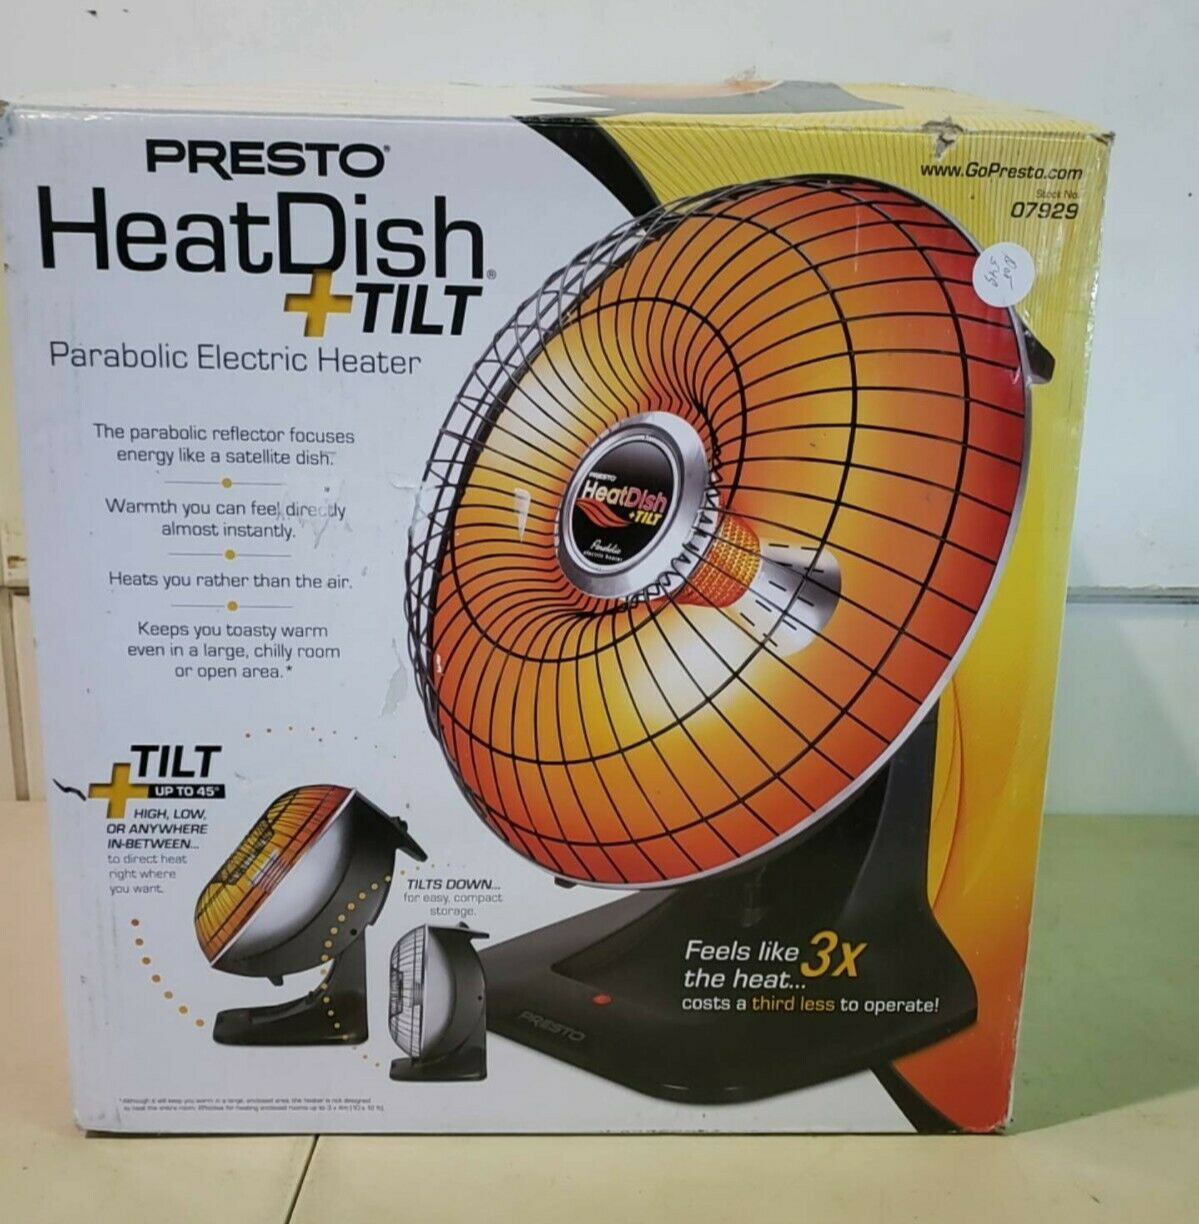 ✳️🔥 Presto Heat Dish Plus Parabolic Electric Heater1000W 120V OPEN BOX 🔥✳️